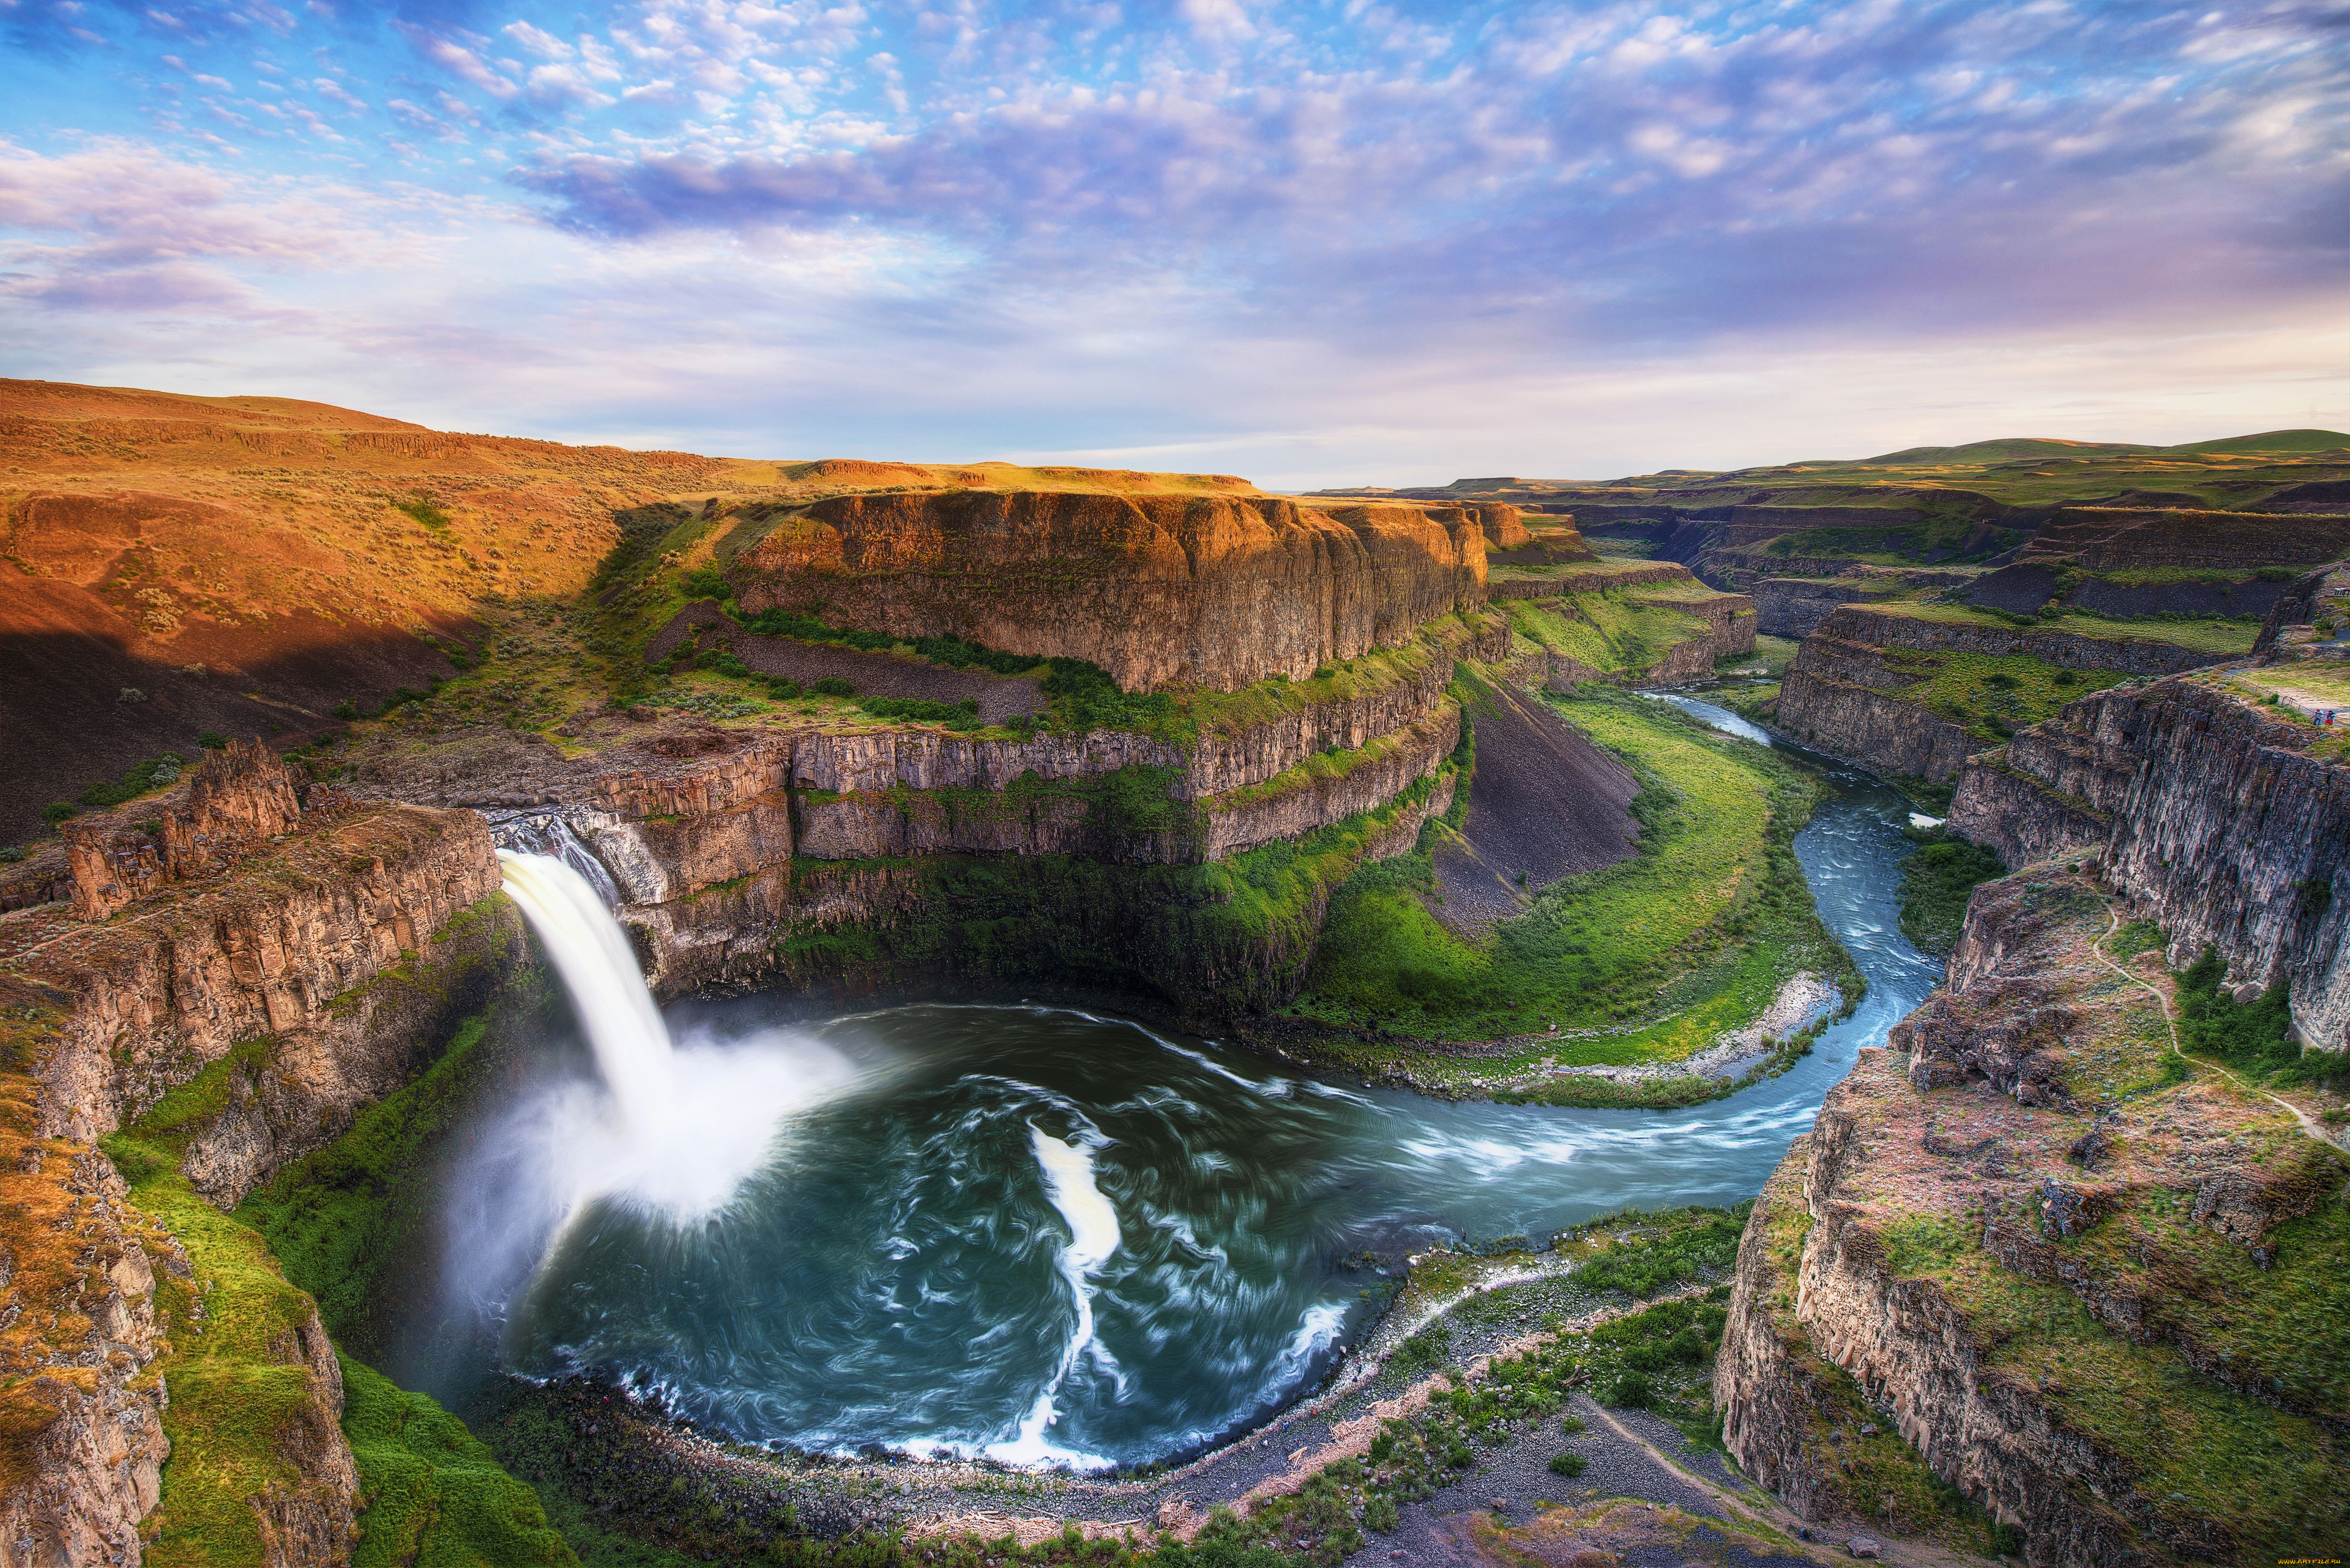 Картинка на обои высокого качества. Водопад Palouse, США.. Водопад Годафосс, Исландия. Каньон Итаимбезинью, Бразилия. Каньон Атуэль, Аргентина.